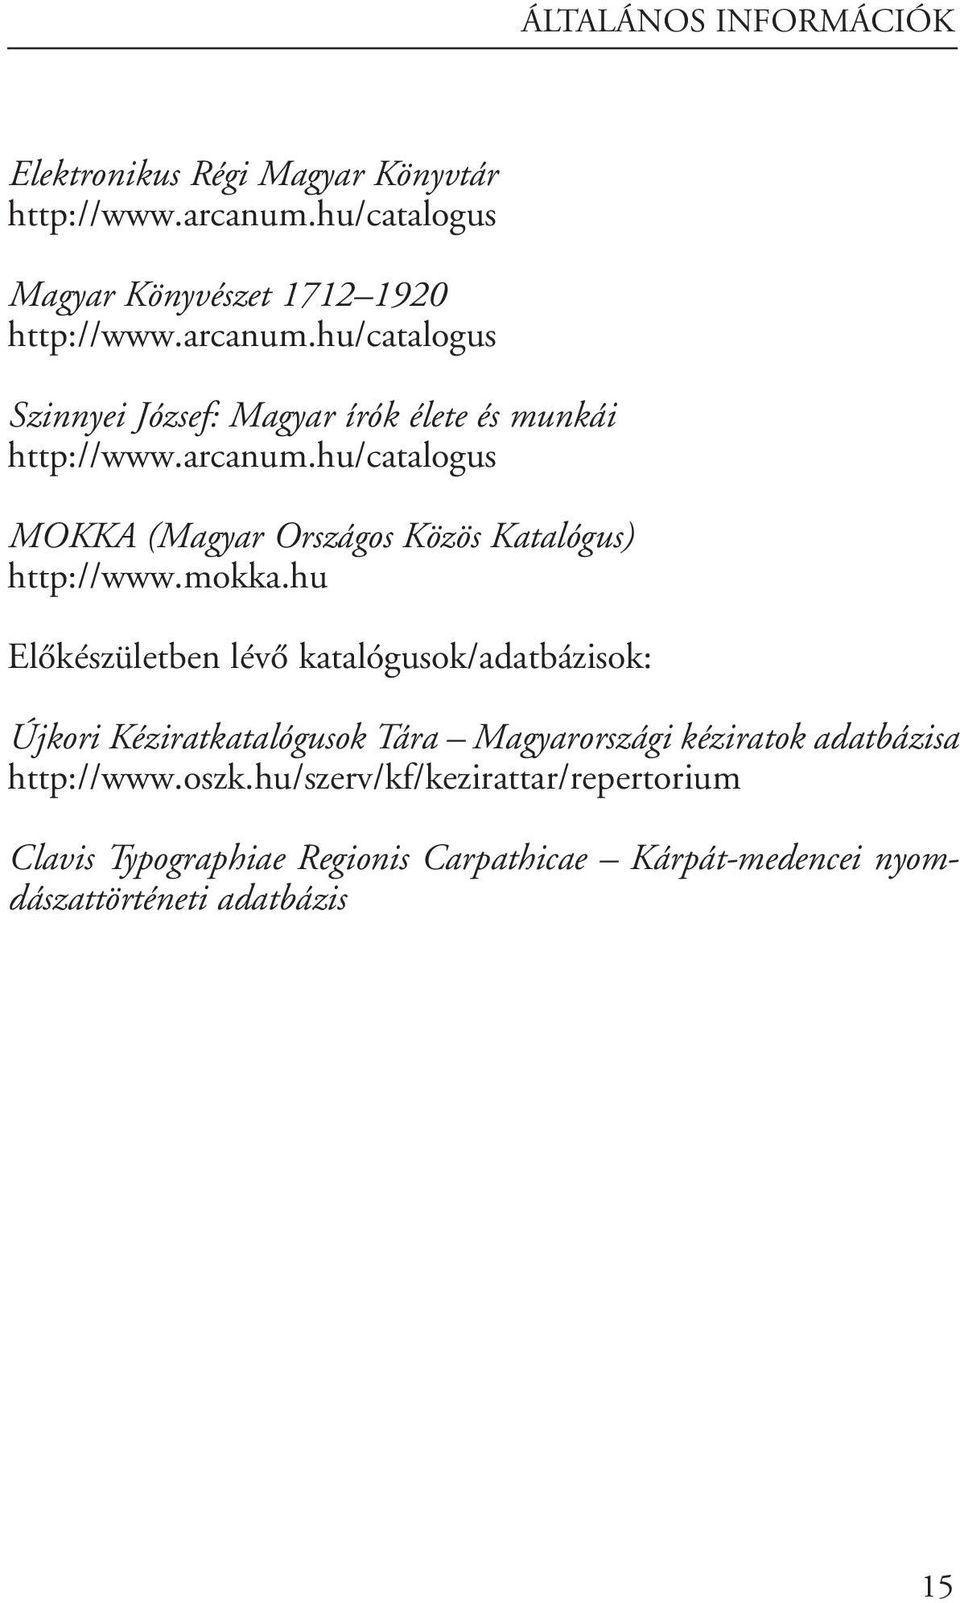 mokka.hu Elôkészületben lévô katalógusok/adatbázisok: Újkori Kéziratkatalógusok Tára Magyarországi kéziratok adatbázisa http://www.